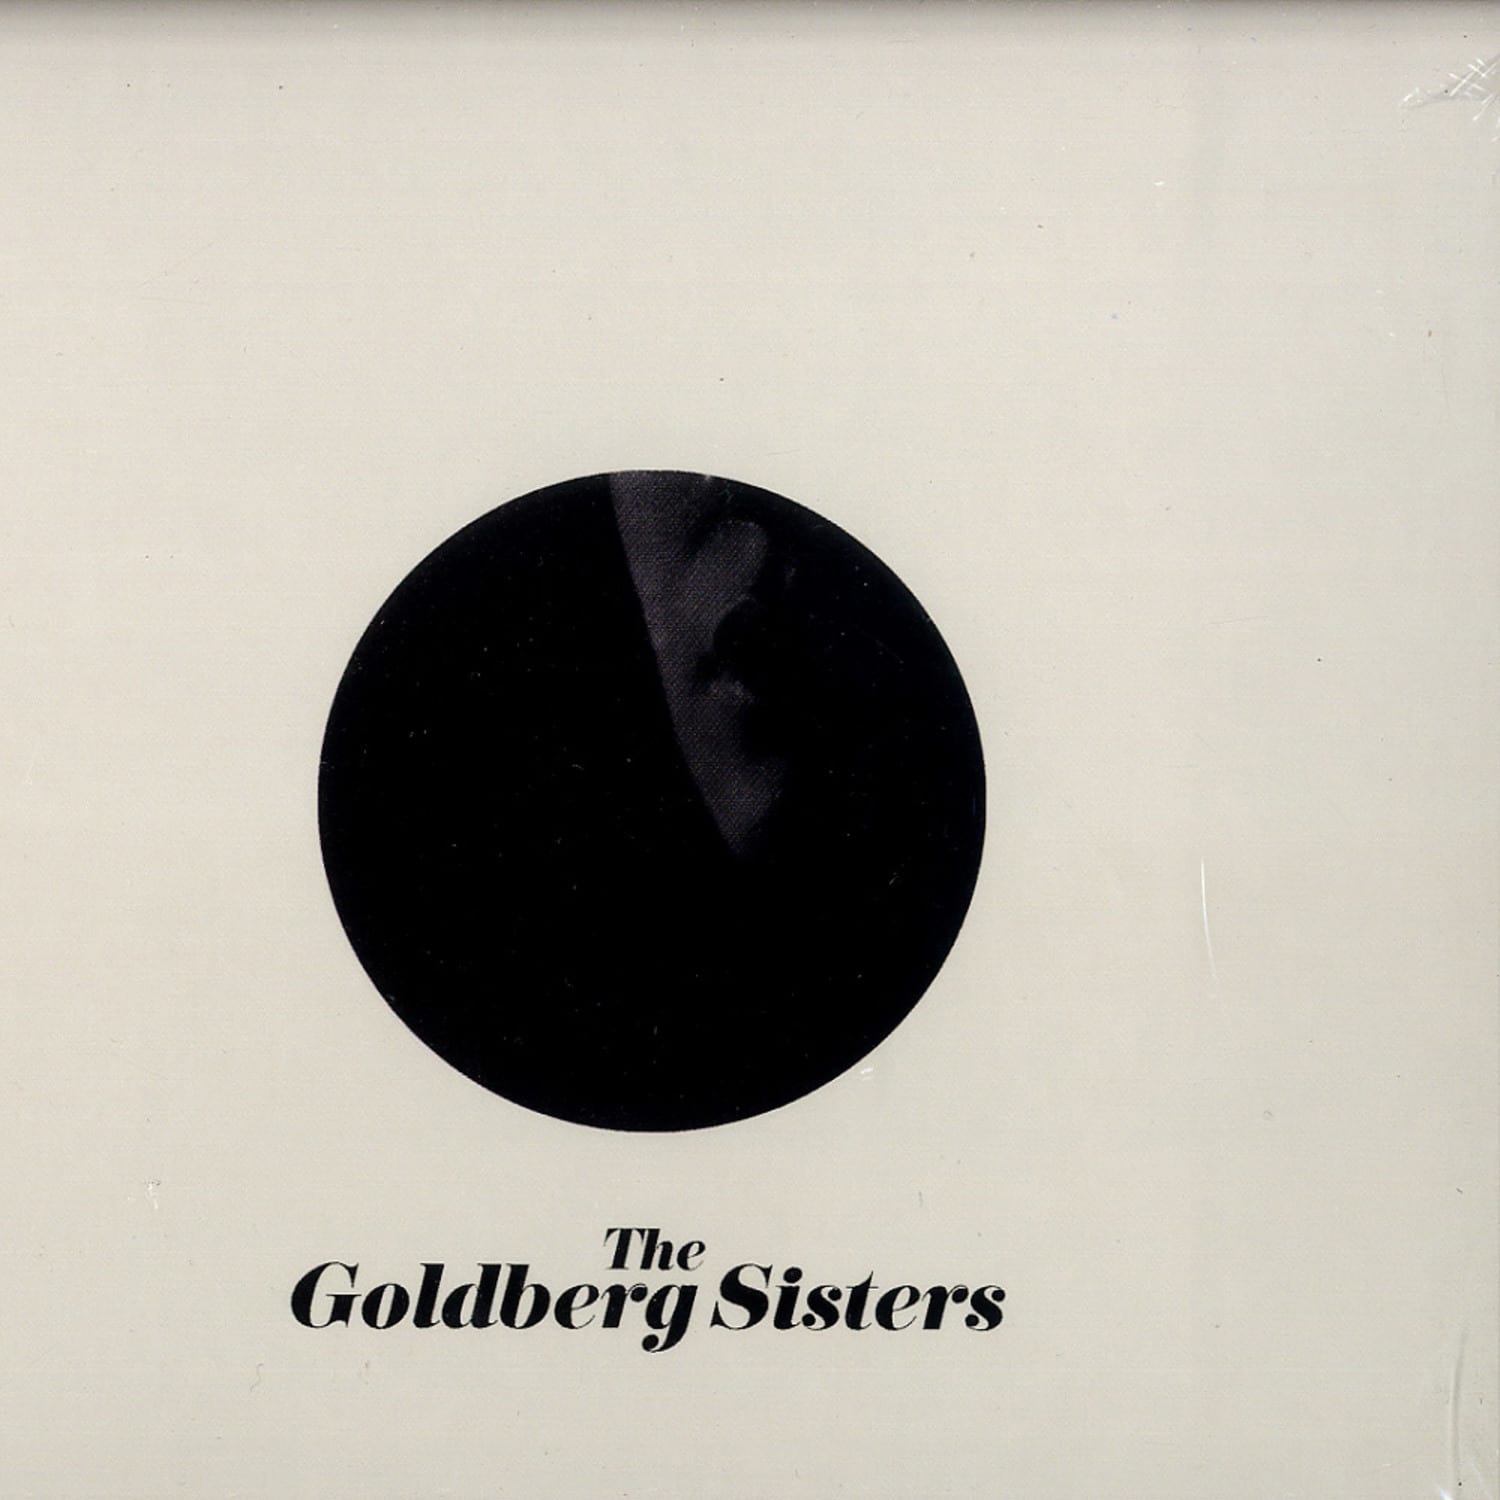 The Goldberg Sisters - THE GOLDBERG SISTERS 